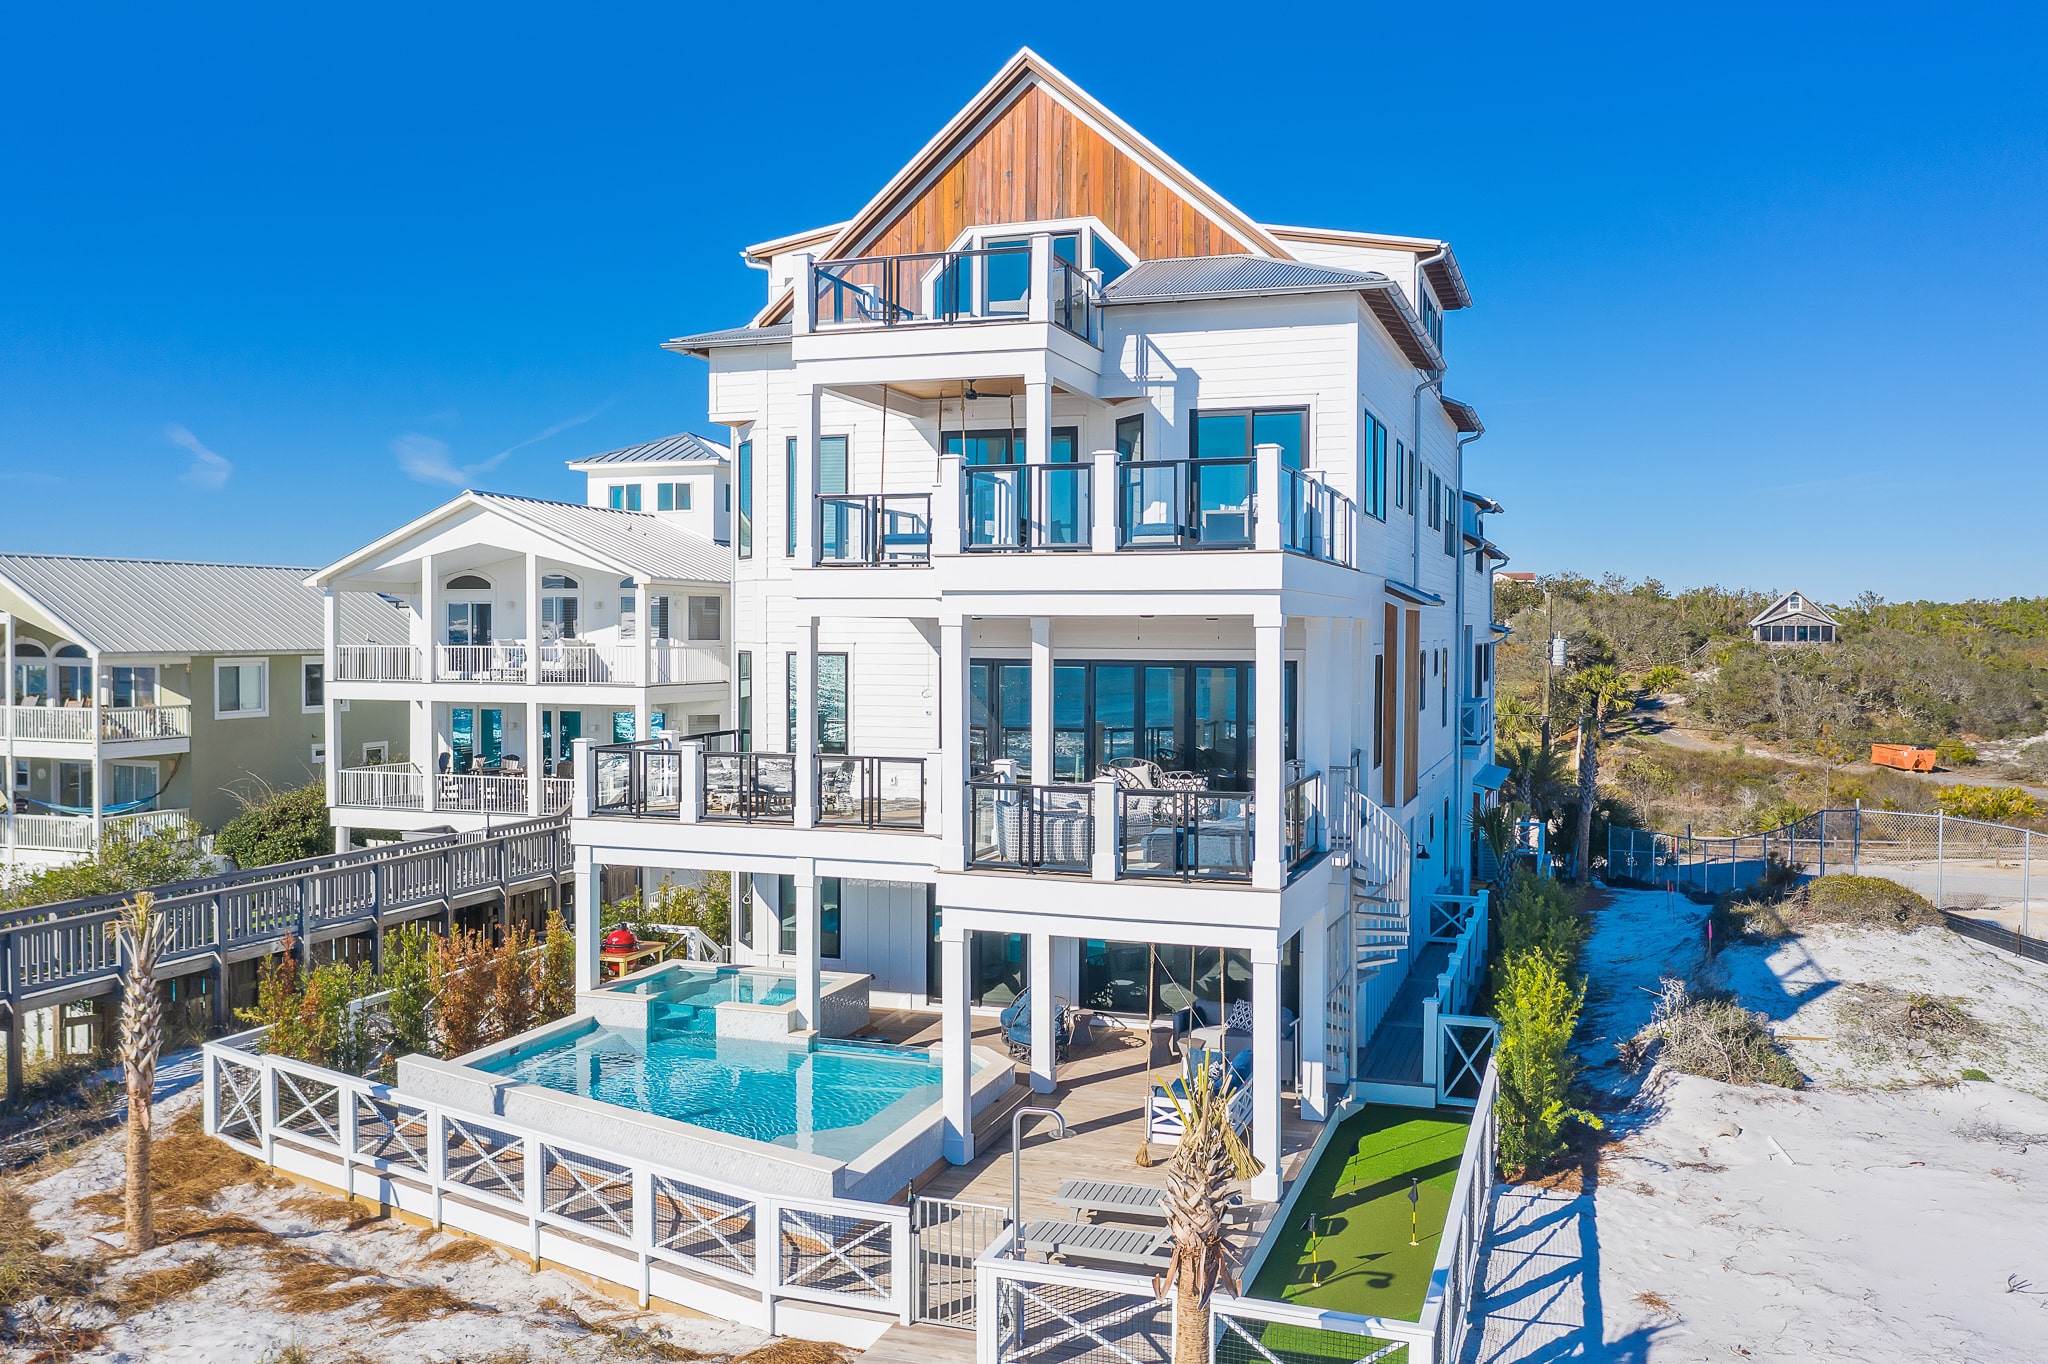 Rosemary Beach, Florida – "30A My Way" es un paraíso frente a la playa con cuatro pisos de espacios al aire libre y acceso privado por paseo marítimo a la playa. Cuenta con una cocina gourmet completamente equipada.